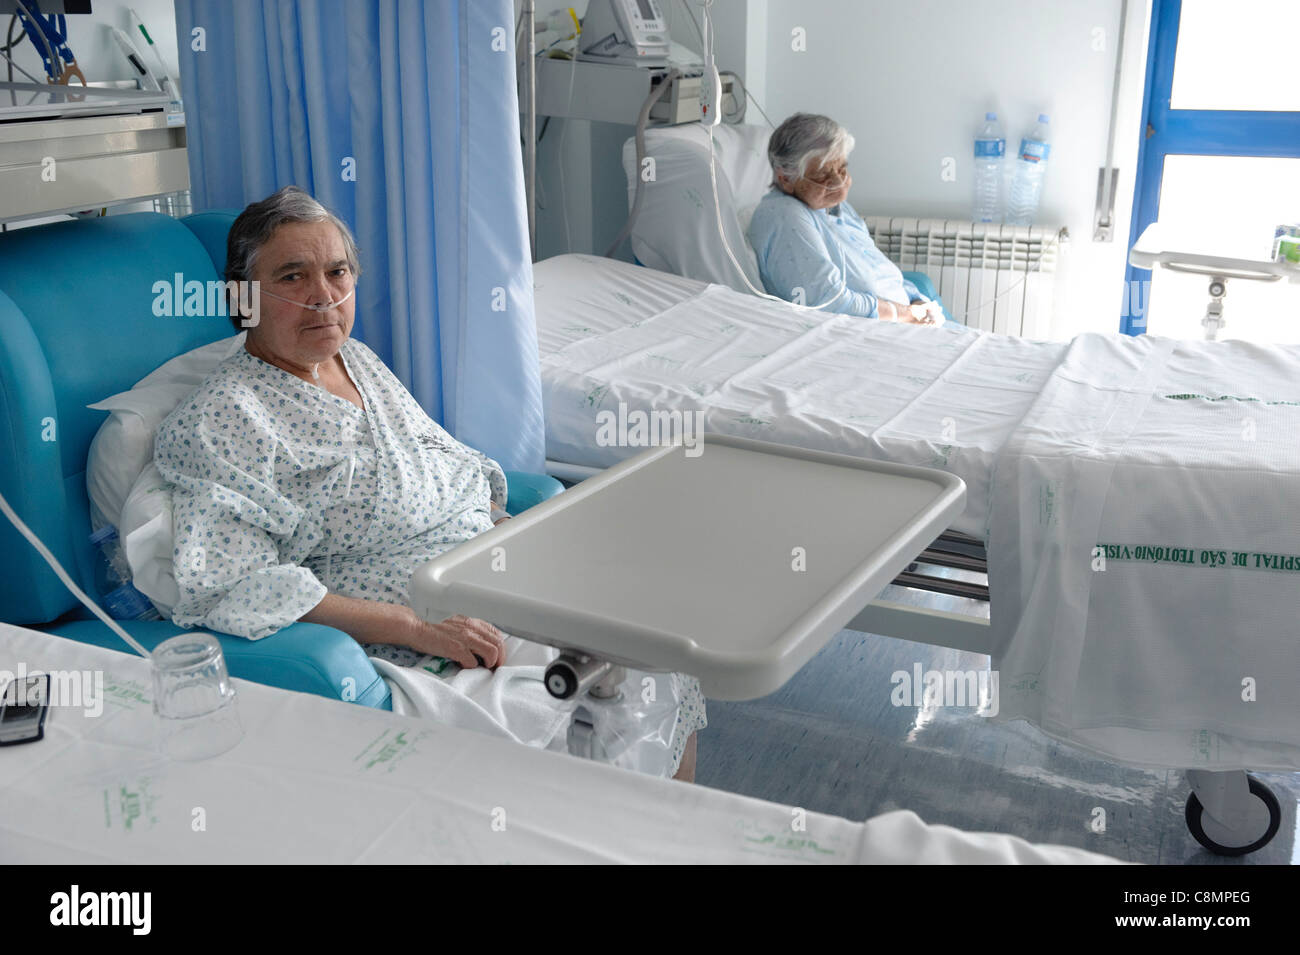 Two elderly women sitting in an hospital ward Stock Photo